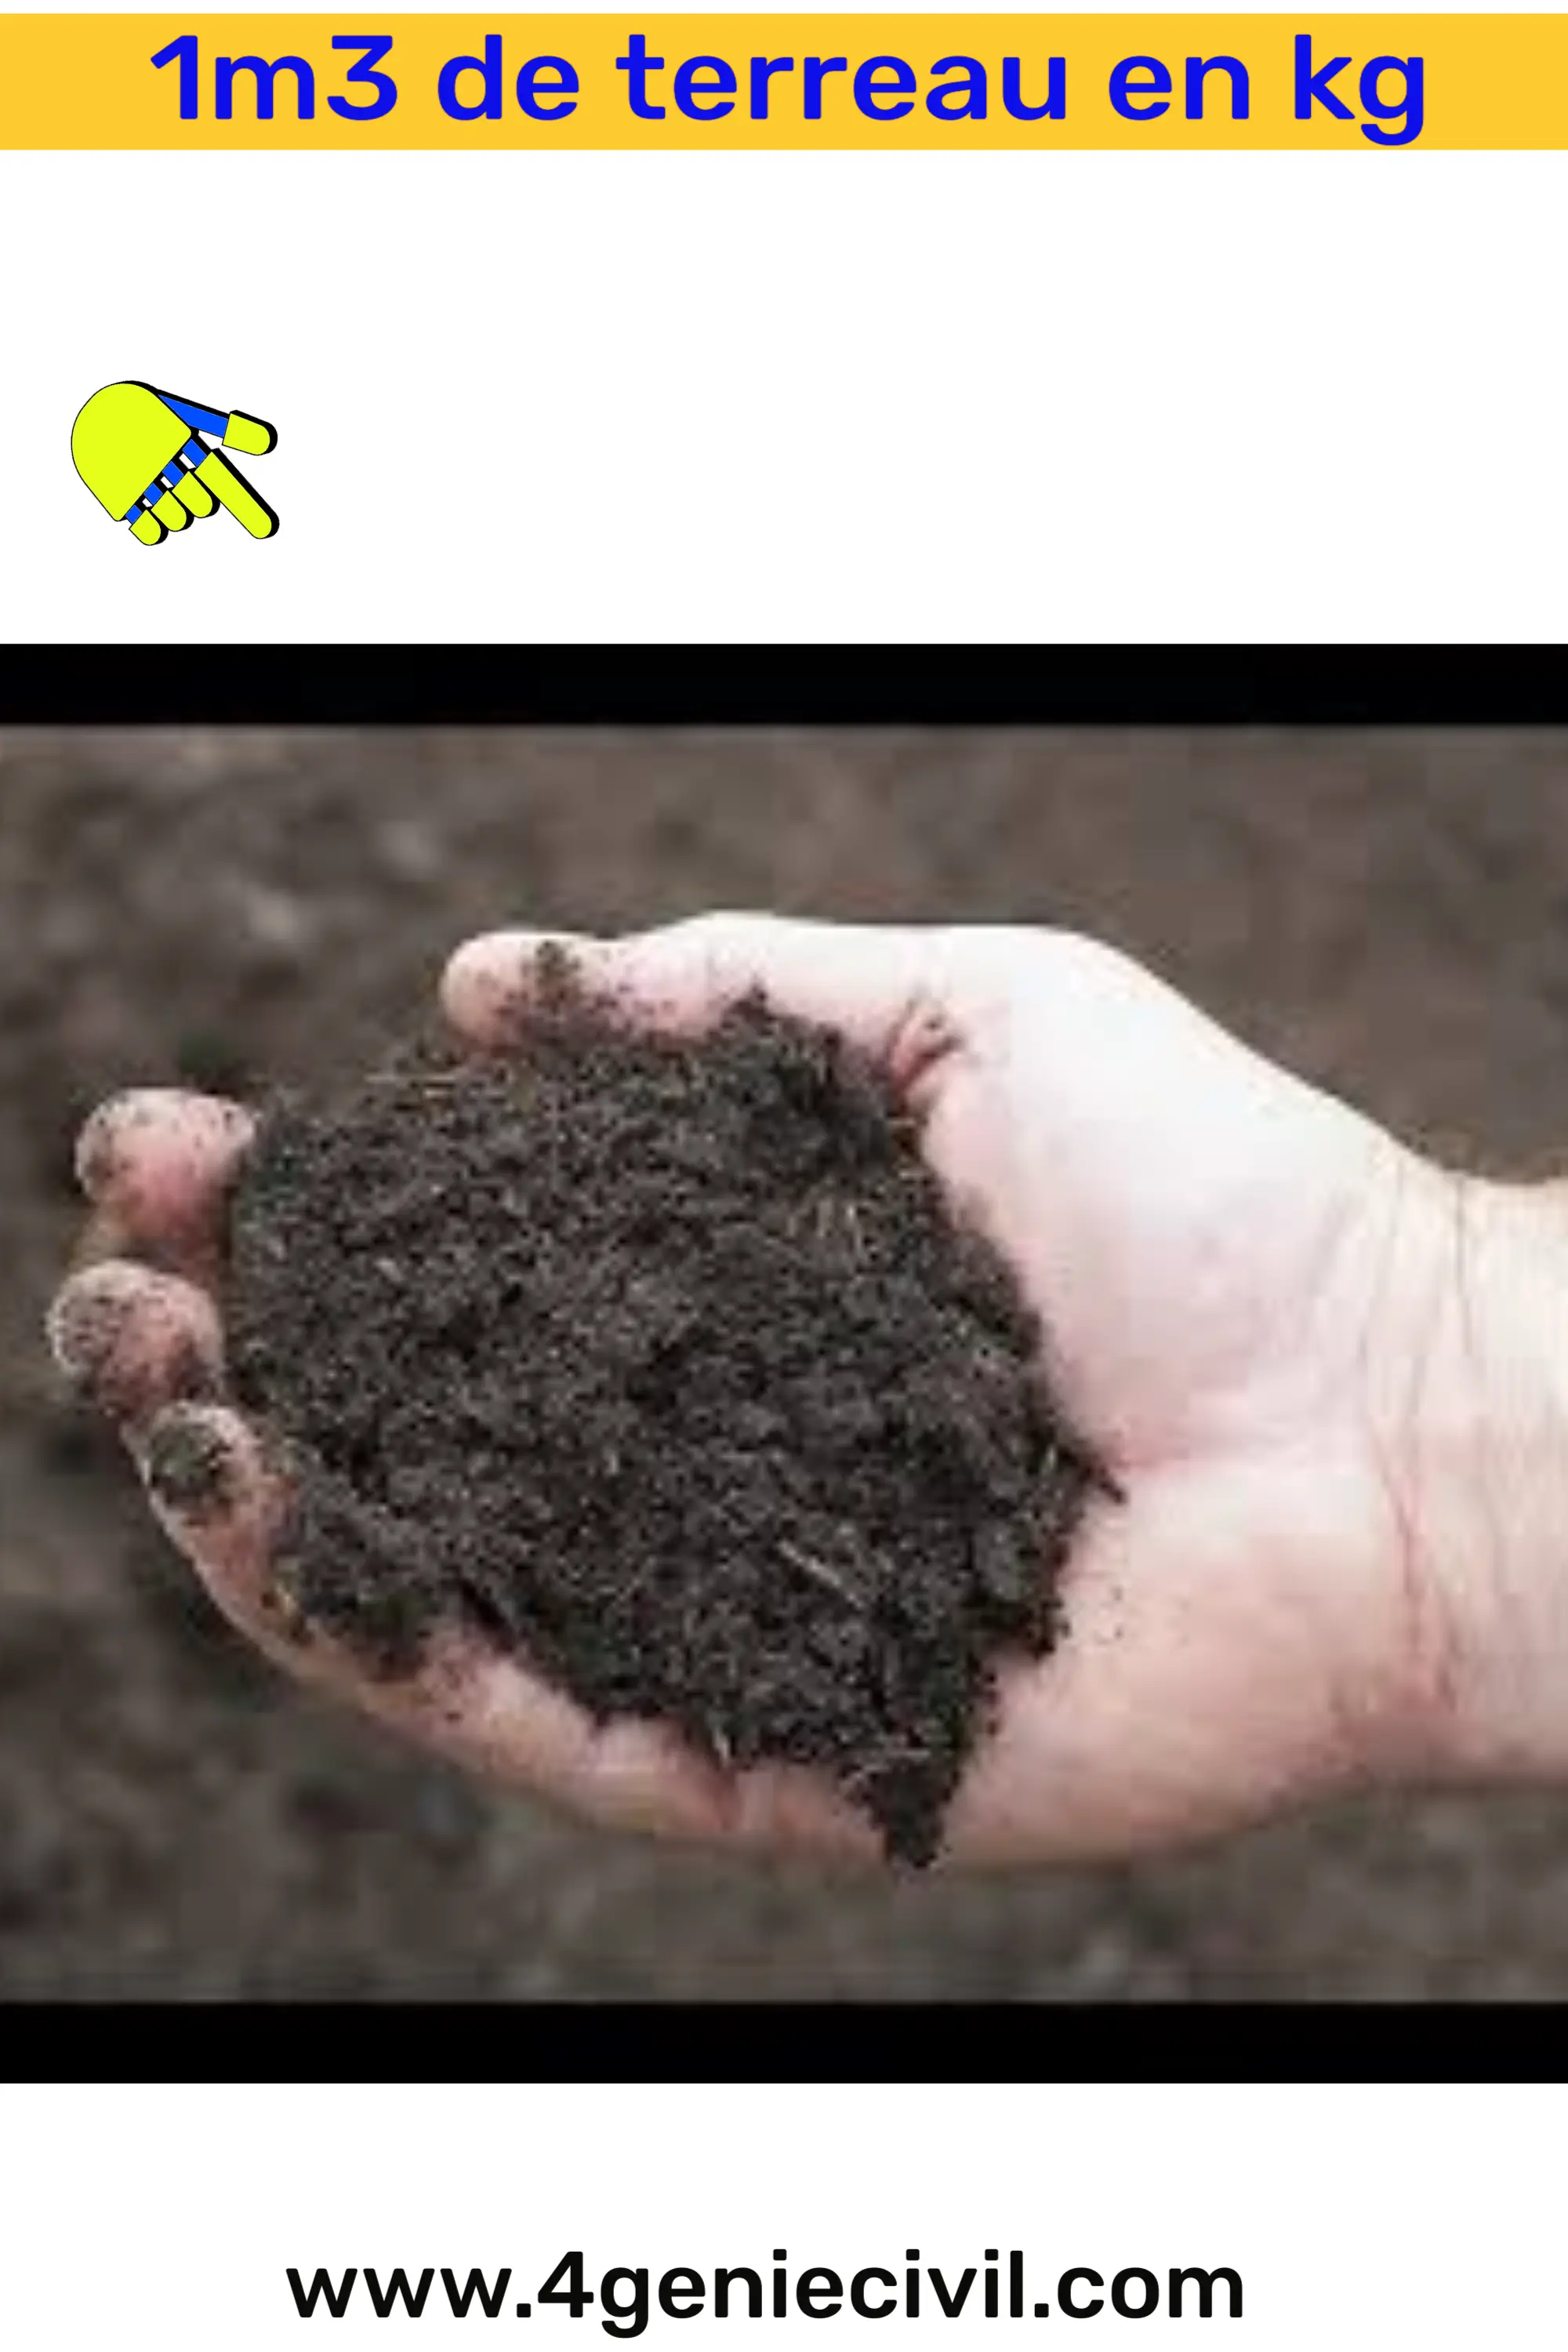 Le terreau est le substrat organique couramment utilisé pour le jardinage et la culture de plantes. Il se présente sous forme de matière pulvérulente brune plus ou moins fine.